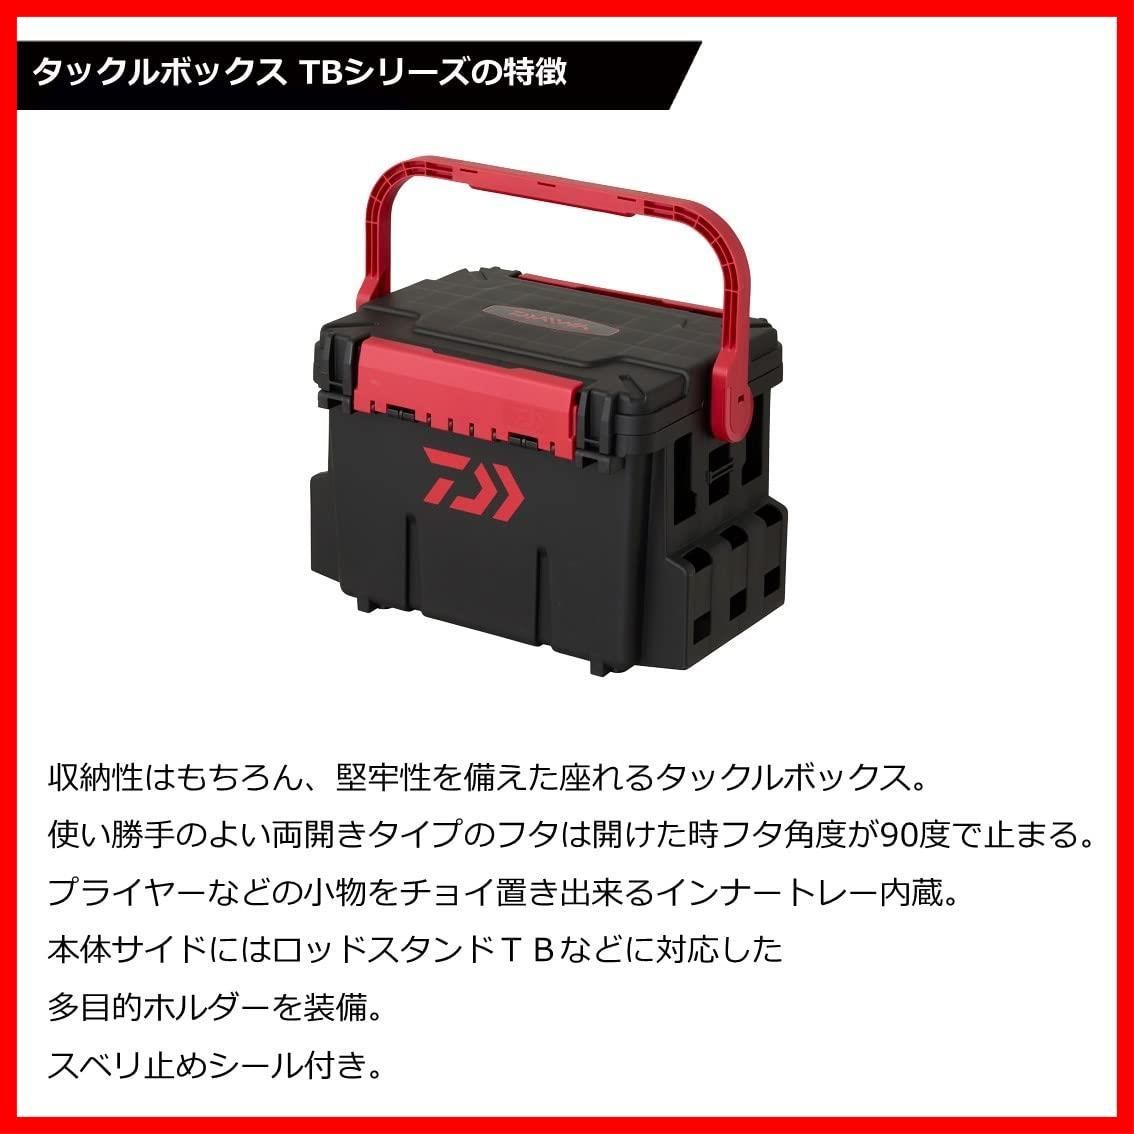 ダイワ(Daiwa) タックルボックス TB5000 ブラック レッド 03502548 